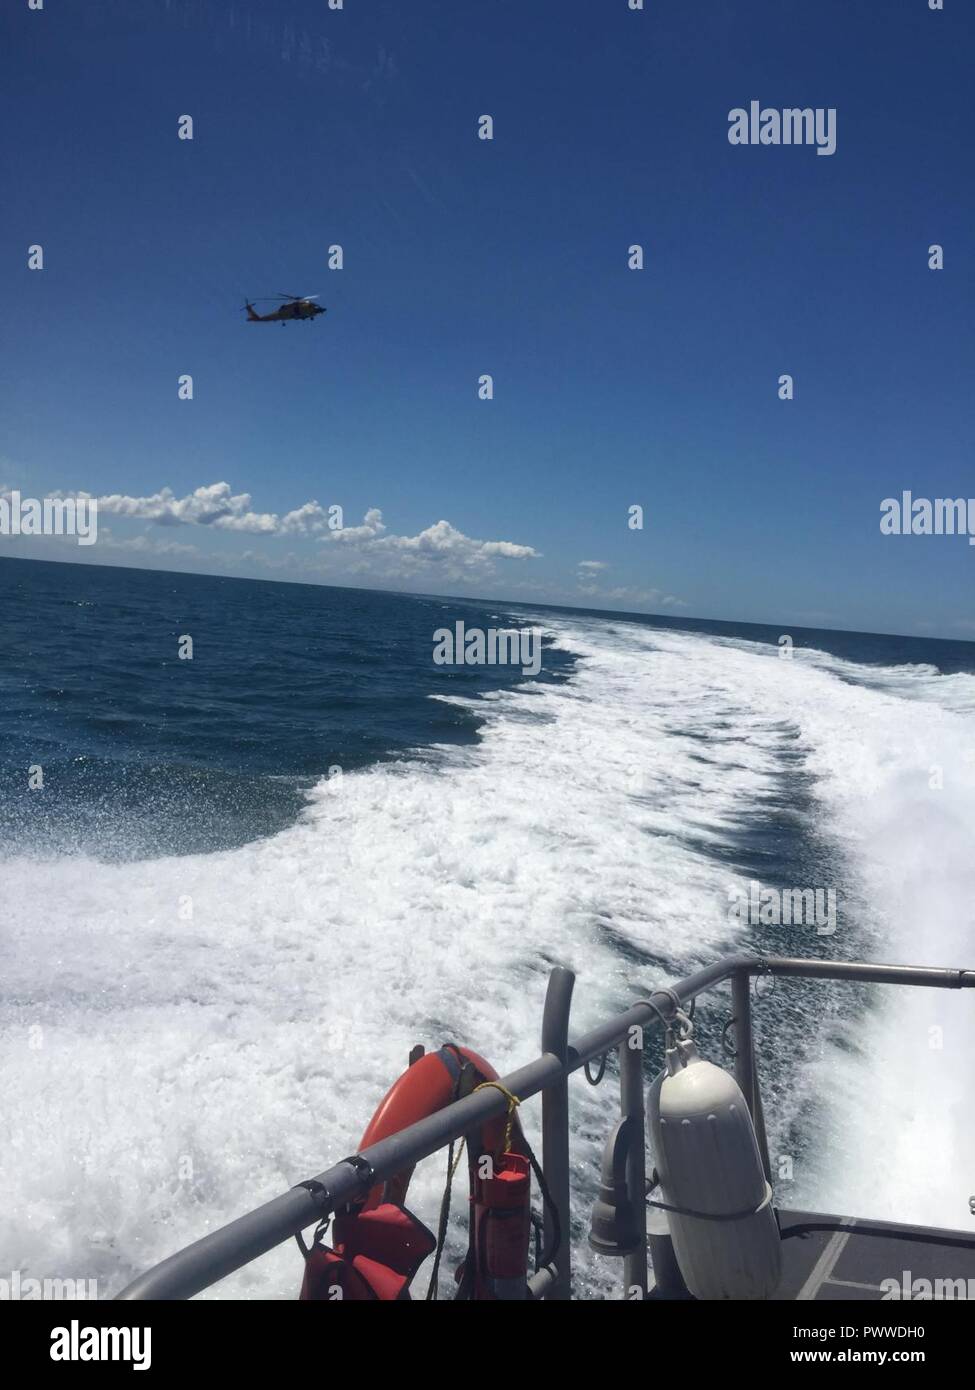 Ein 45-Fuß-Antwort Boat-Medium boatcrew von Station Sand Key und einem MH-60 Jayhawk Helikopter Crew von Air Station Clearwater reagieren zu acht Menschen an Bord eines 30-Fuß-charter Tauchboot nehmen auf Wasser 12 Meilen westlich von Anclote, Florida, Donnerstag, 6. Juli 2017. Die Jayhawk Crew und Besatzung koordiniert und entwässert die Charter Tauchboot Folge von Verletzungen. Stockfoto